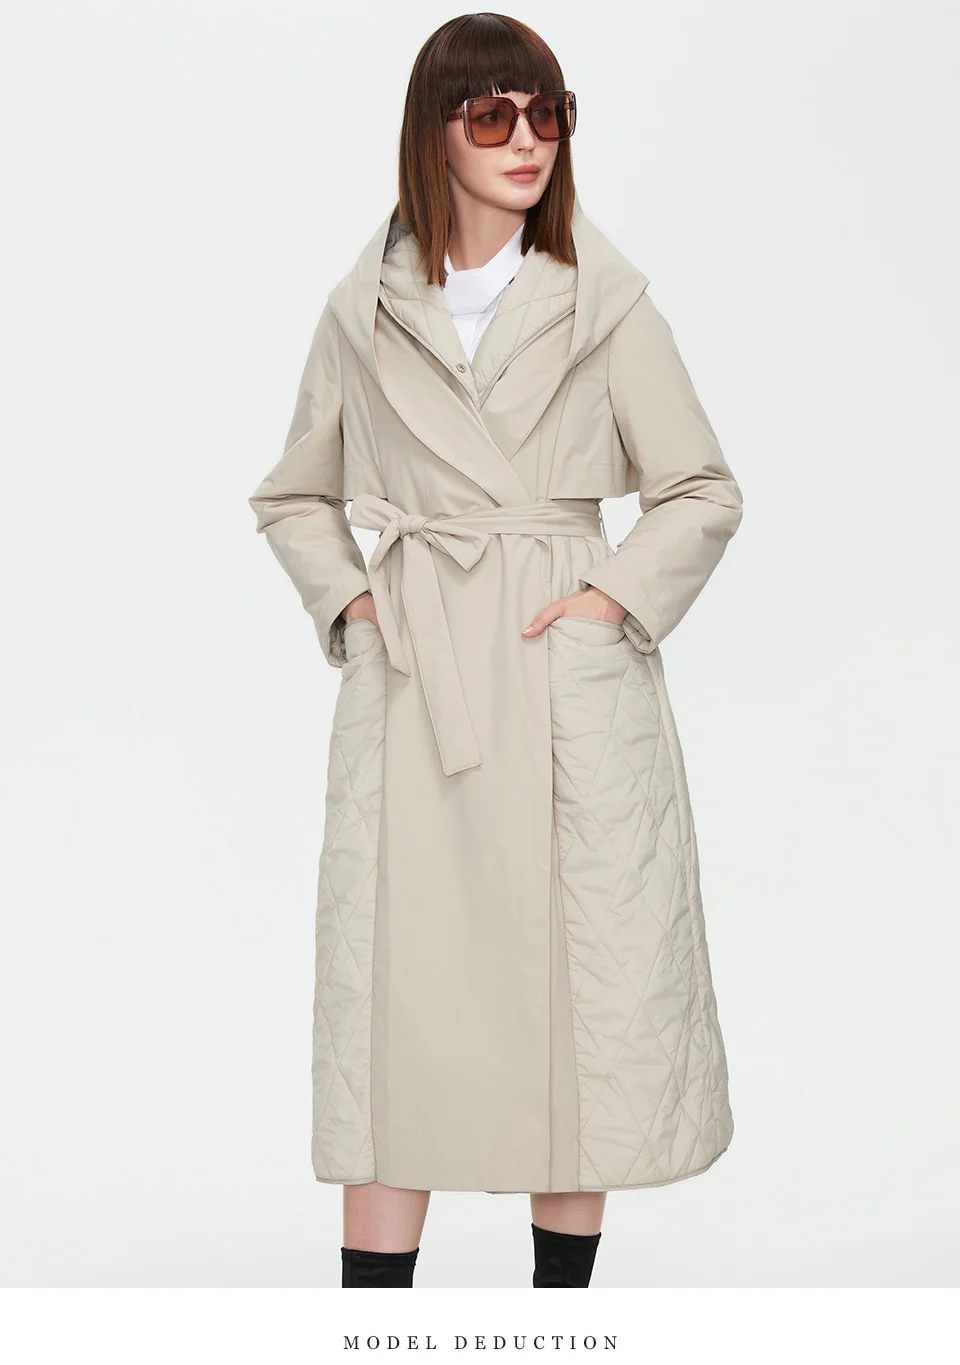 YUEHAO Coats For Women Women's Autumn And Winter Fashion Lattice